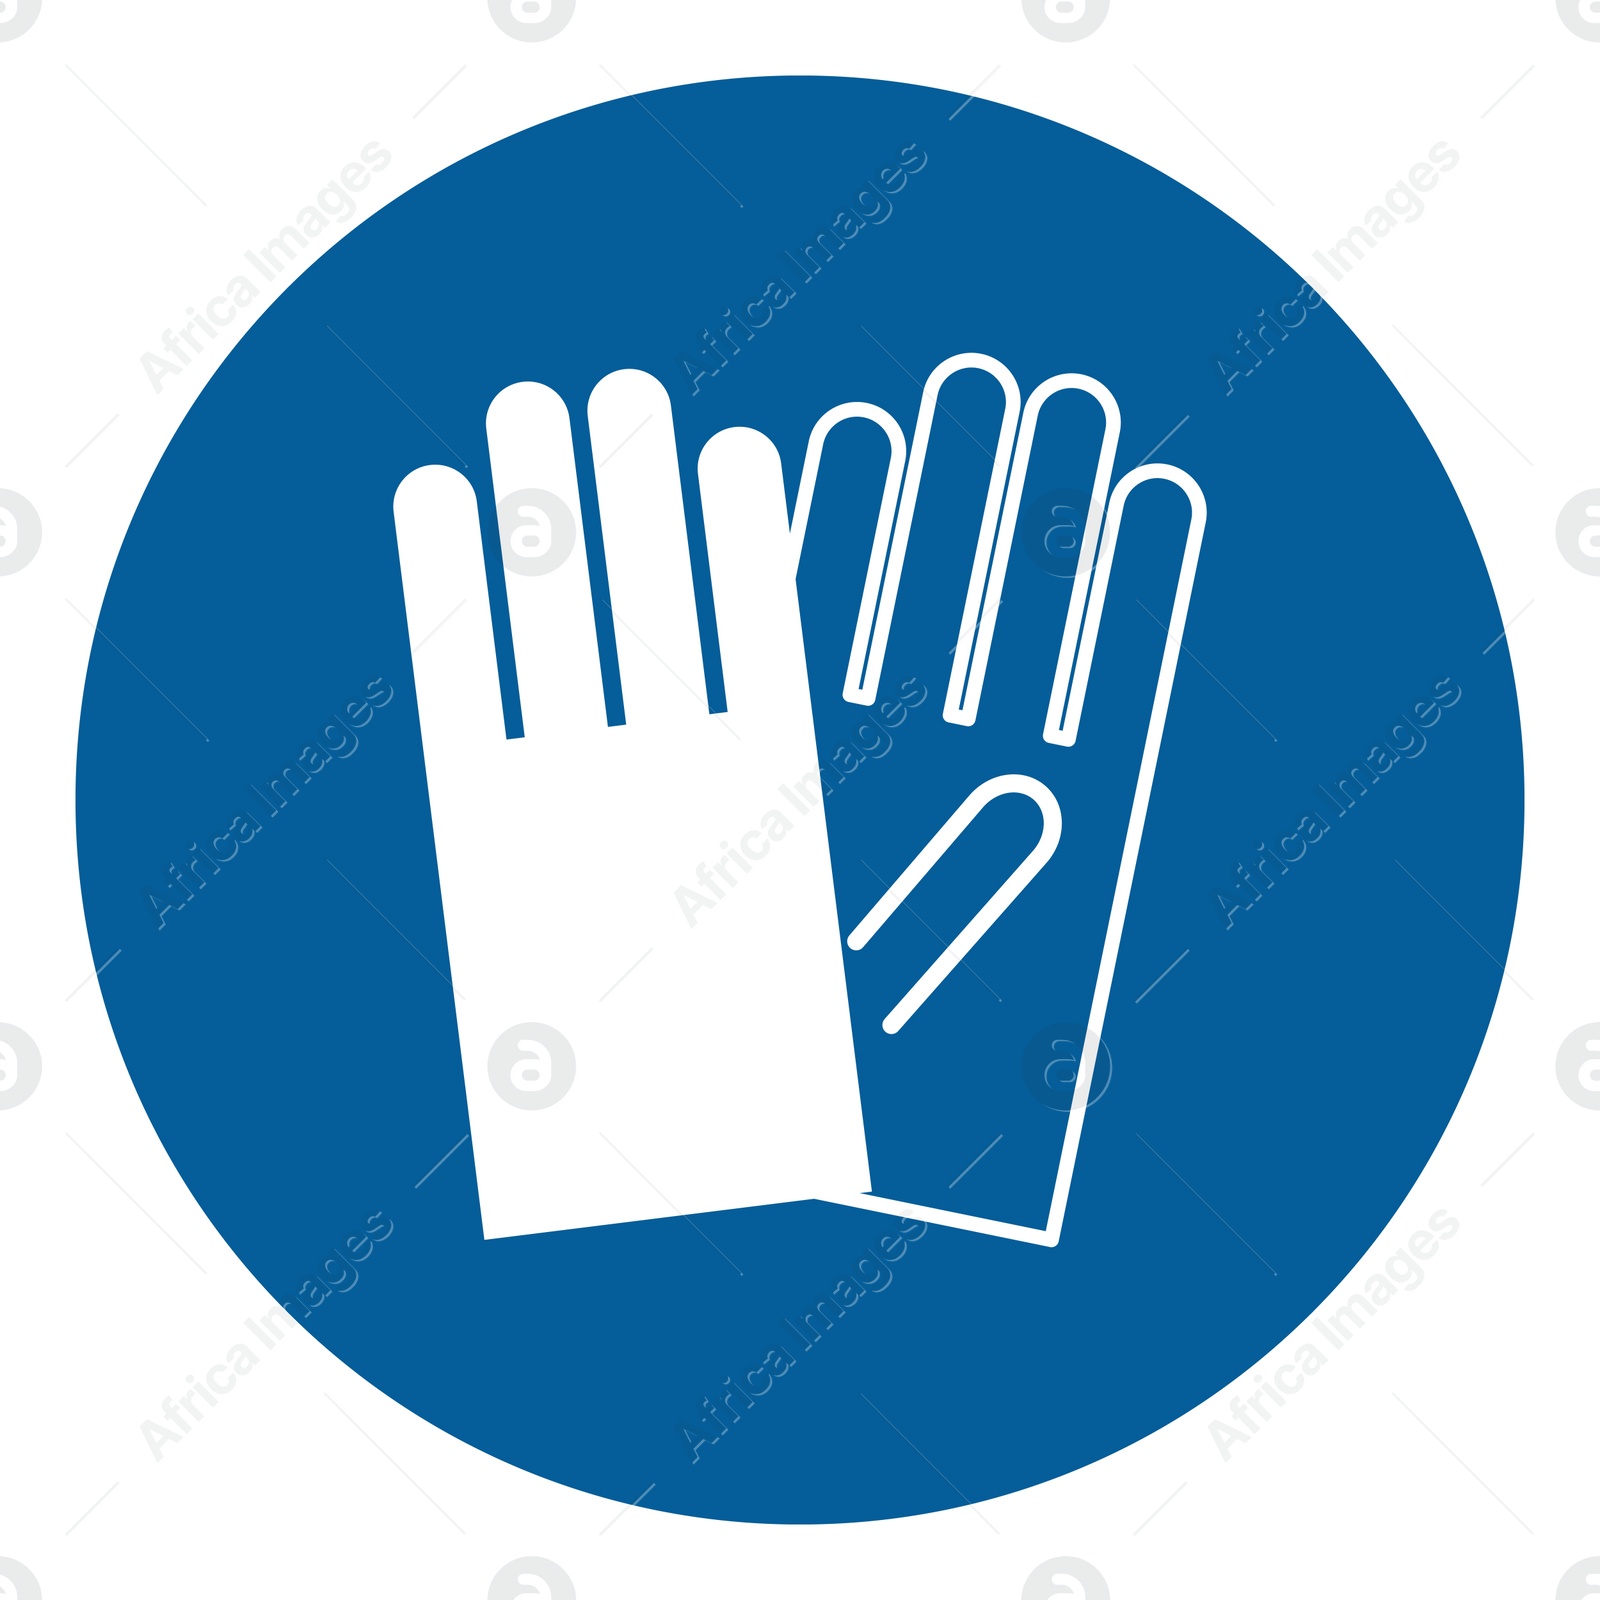 Image of International Maritime Organization (IMO) sign, illustration. Gloves symbol